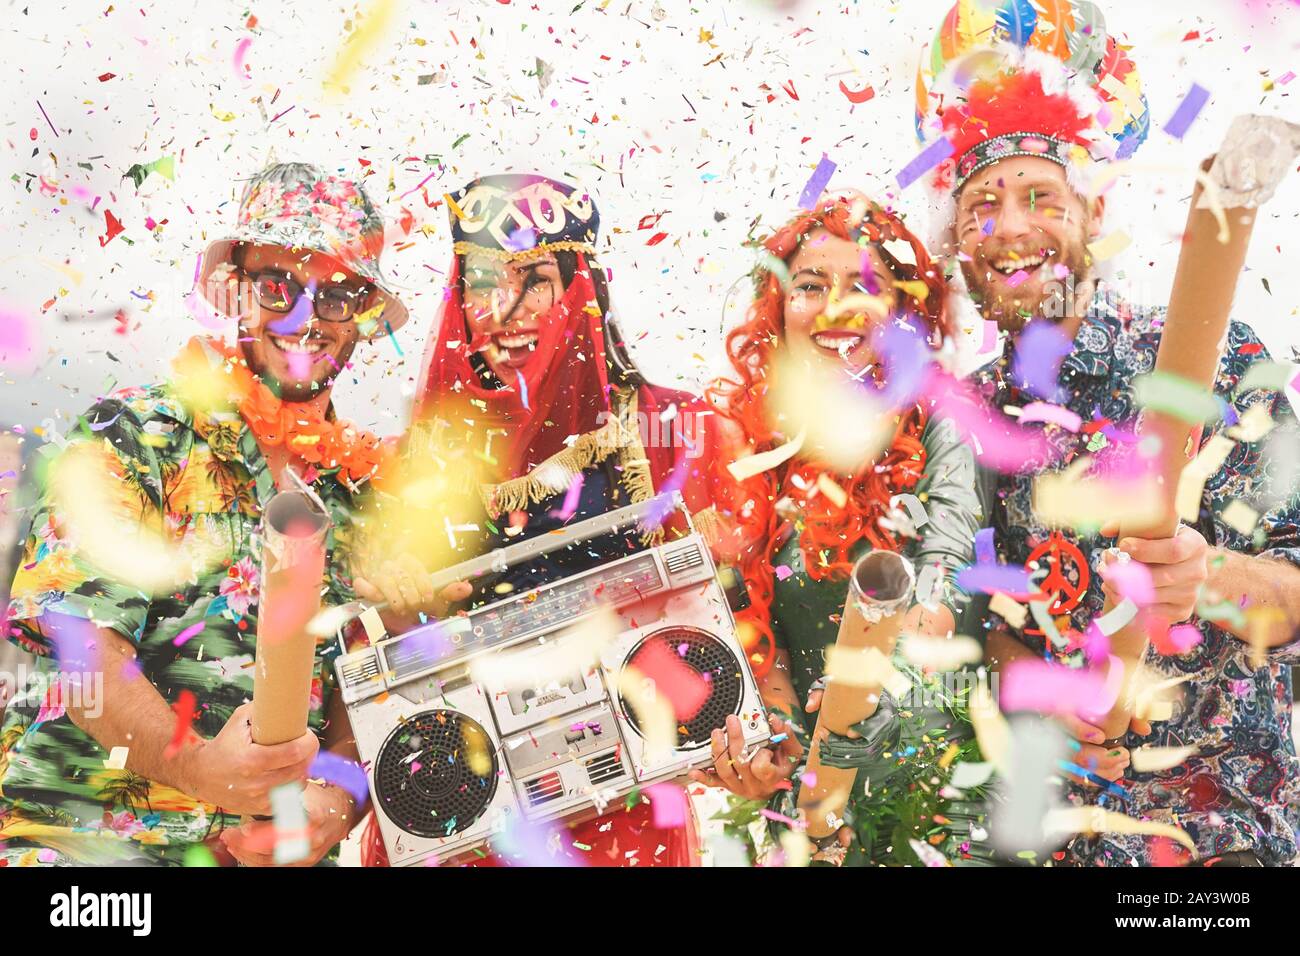 Joyeux amis célébrant l'événement de fête de carnaval en plein air - jeunes fous ayant des costumes amusants à écouter de la musique avec une chaîne stéréo vintage boombox Banque D'Images